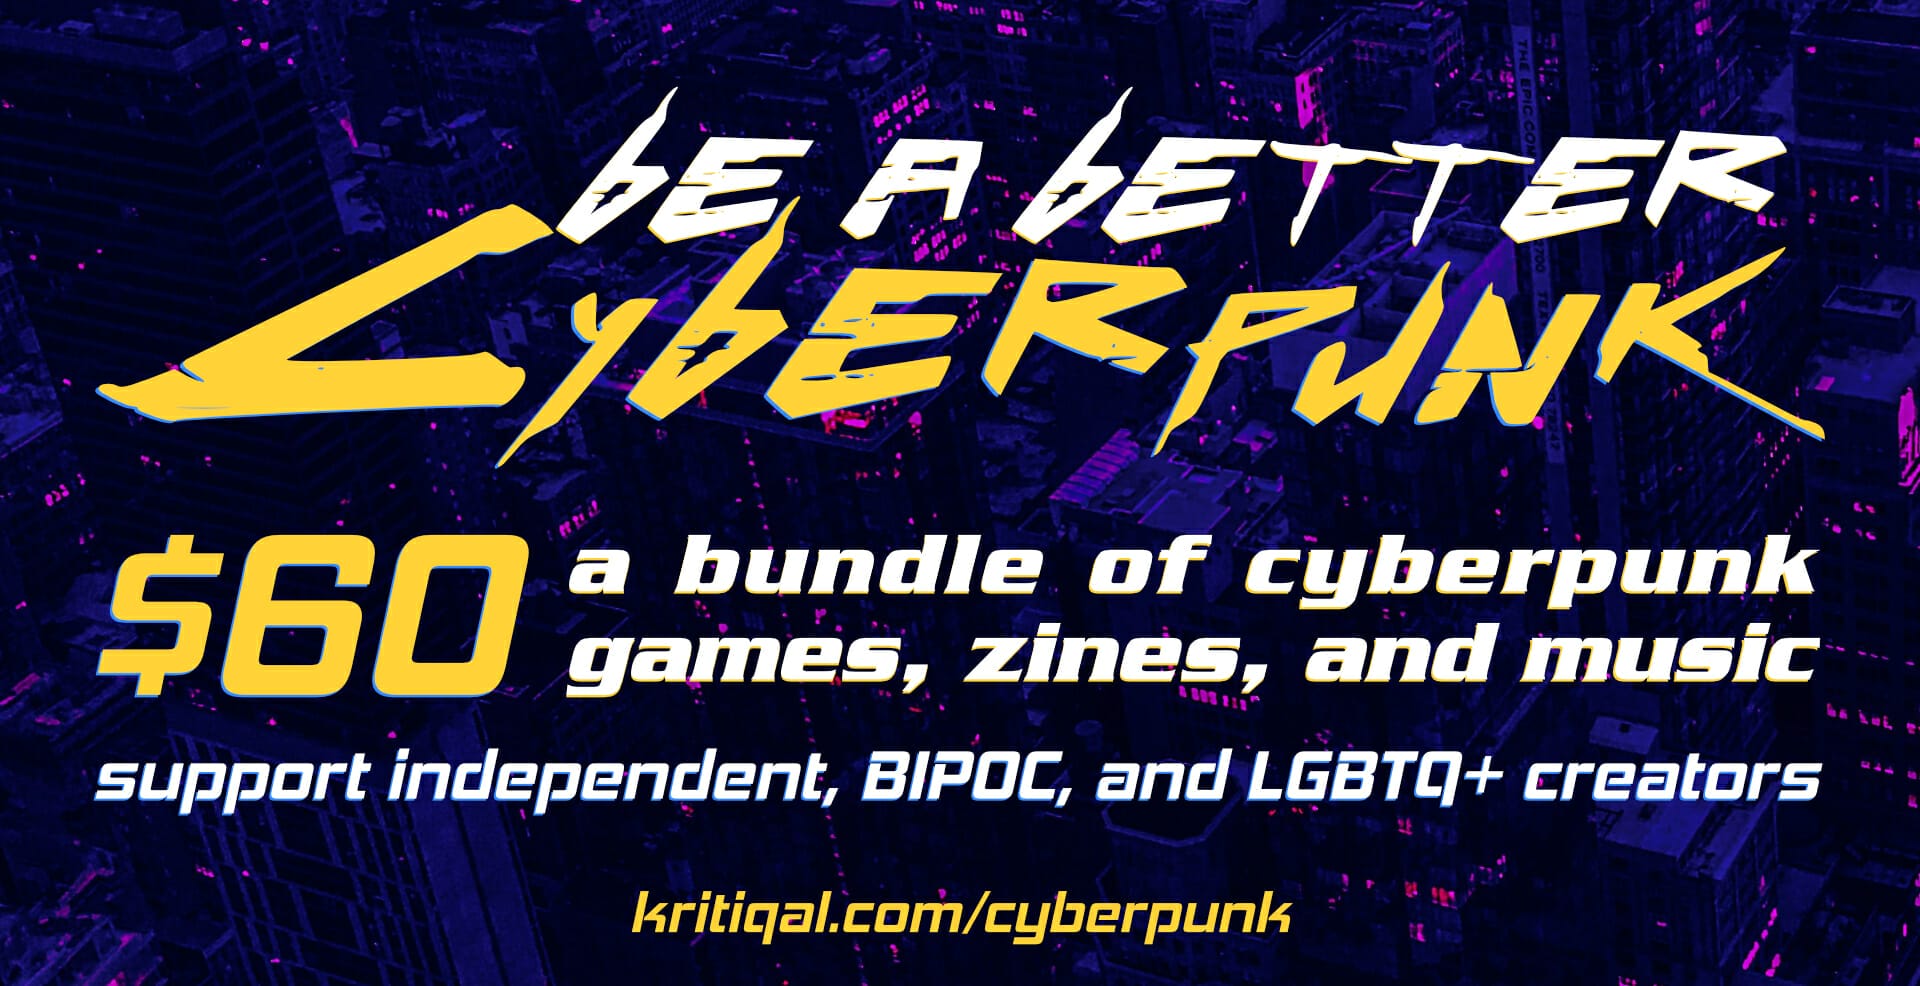 Be A Better Cyberpunk